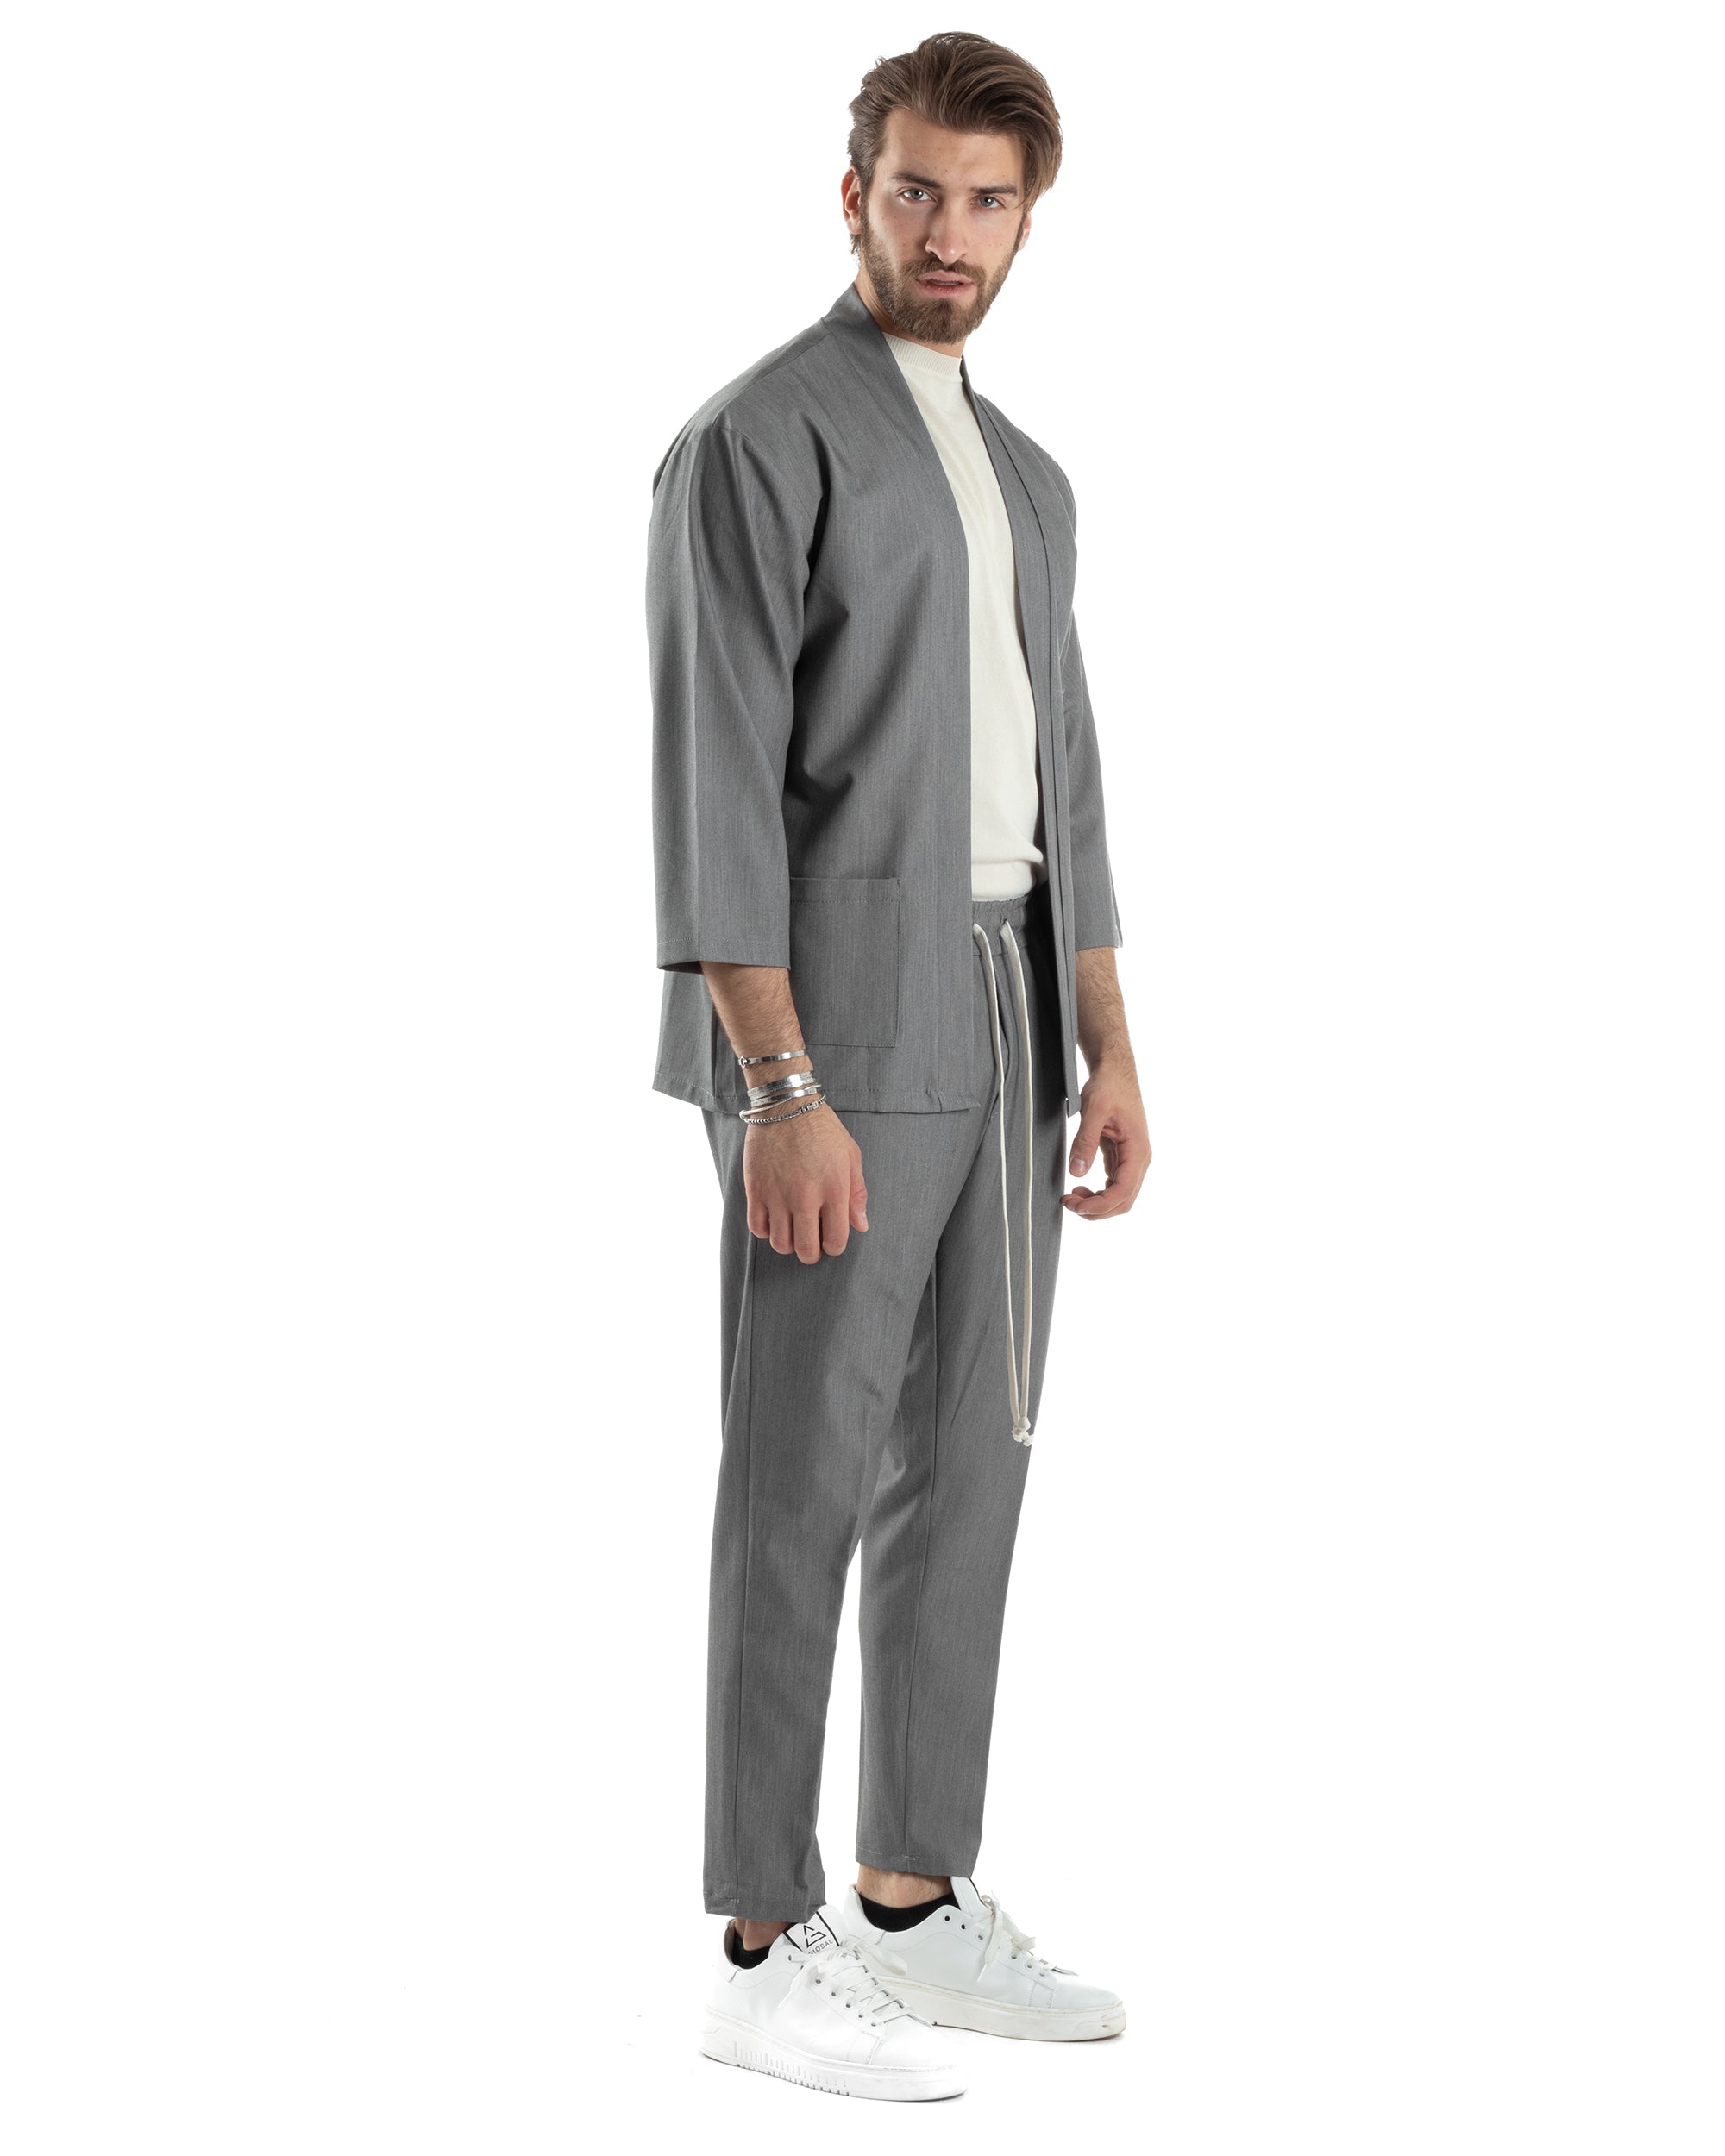 Completo Set Coordinato Uomo Viscosa Giacca Kimono Pantaloni Grigio Casual Elegante GIOSAL-OU2447A